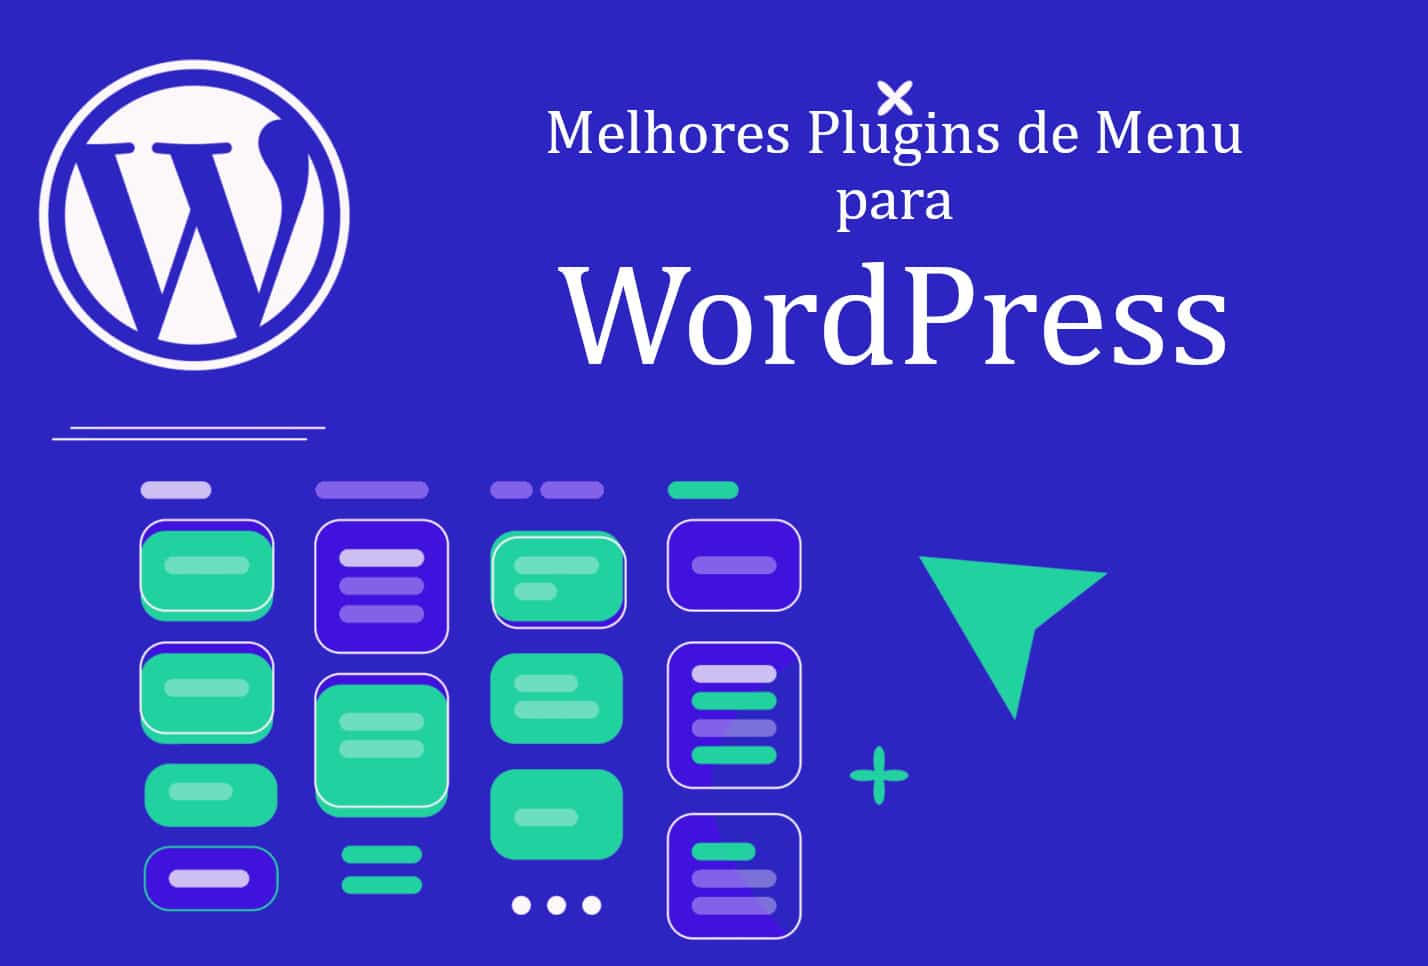 Melhores plugins de menu para wordpress em 2021 | 854290c6 capa | wordpress | plugins de menu para wordpress wordpress